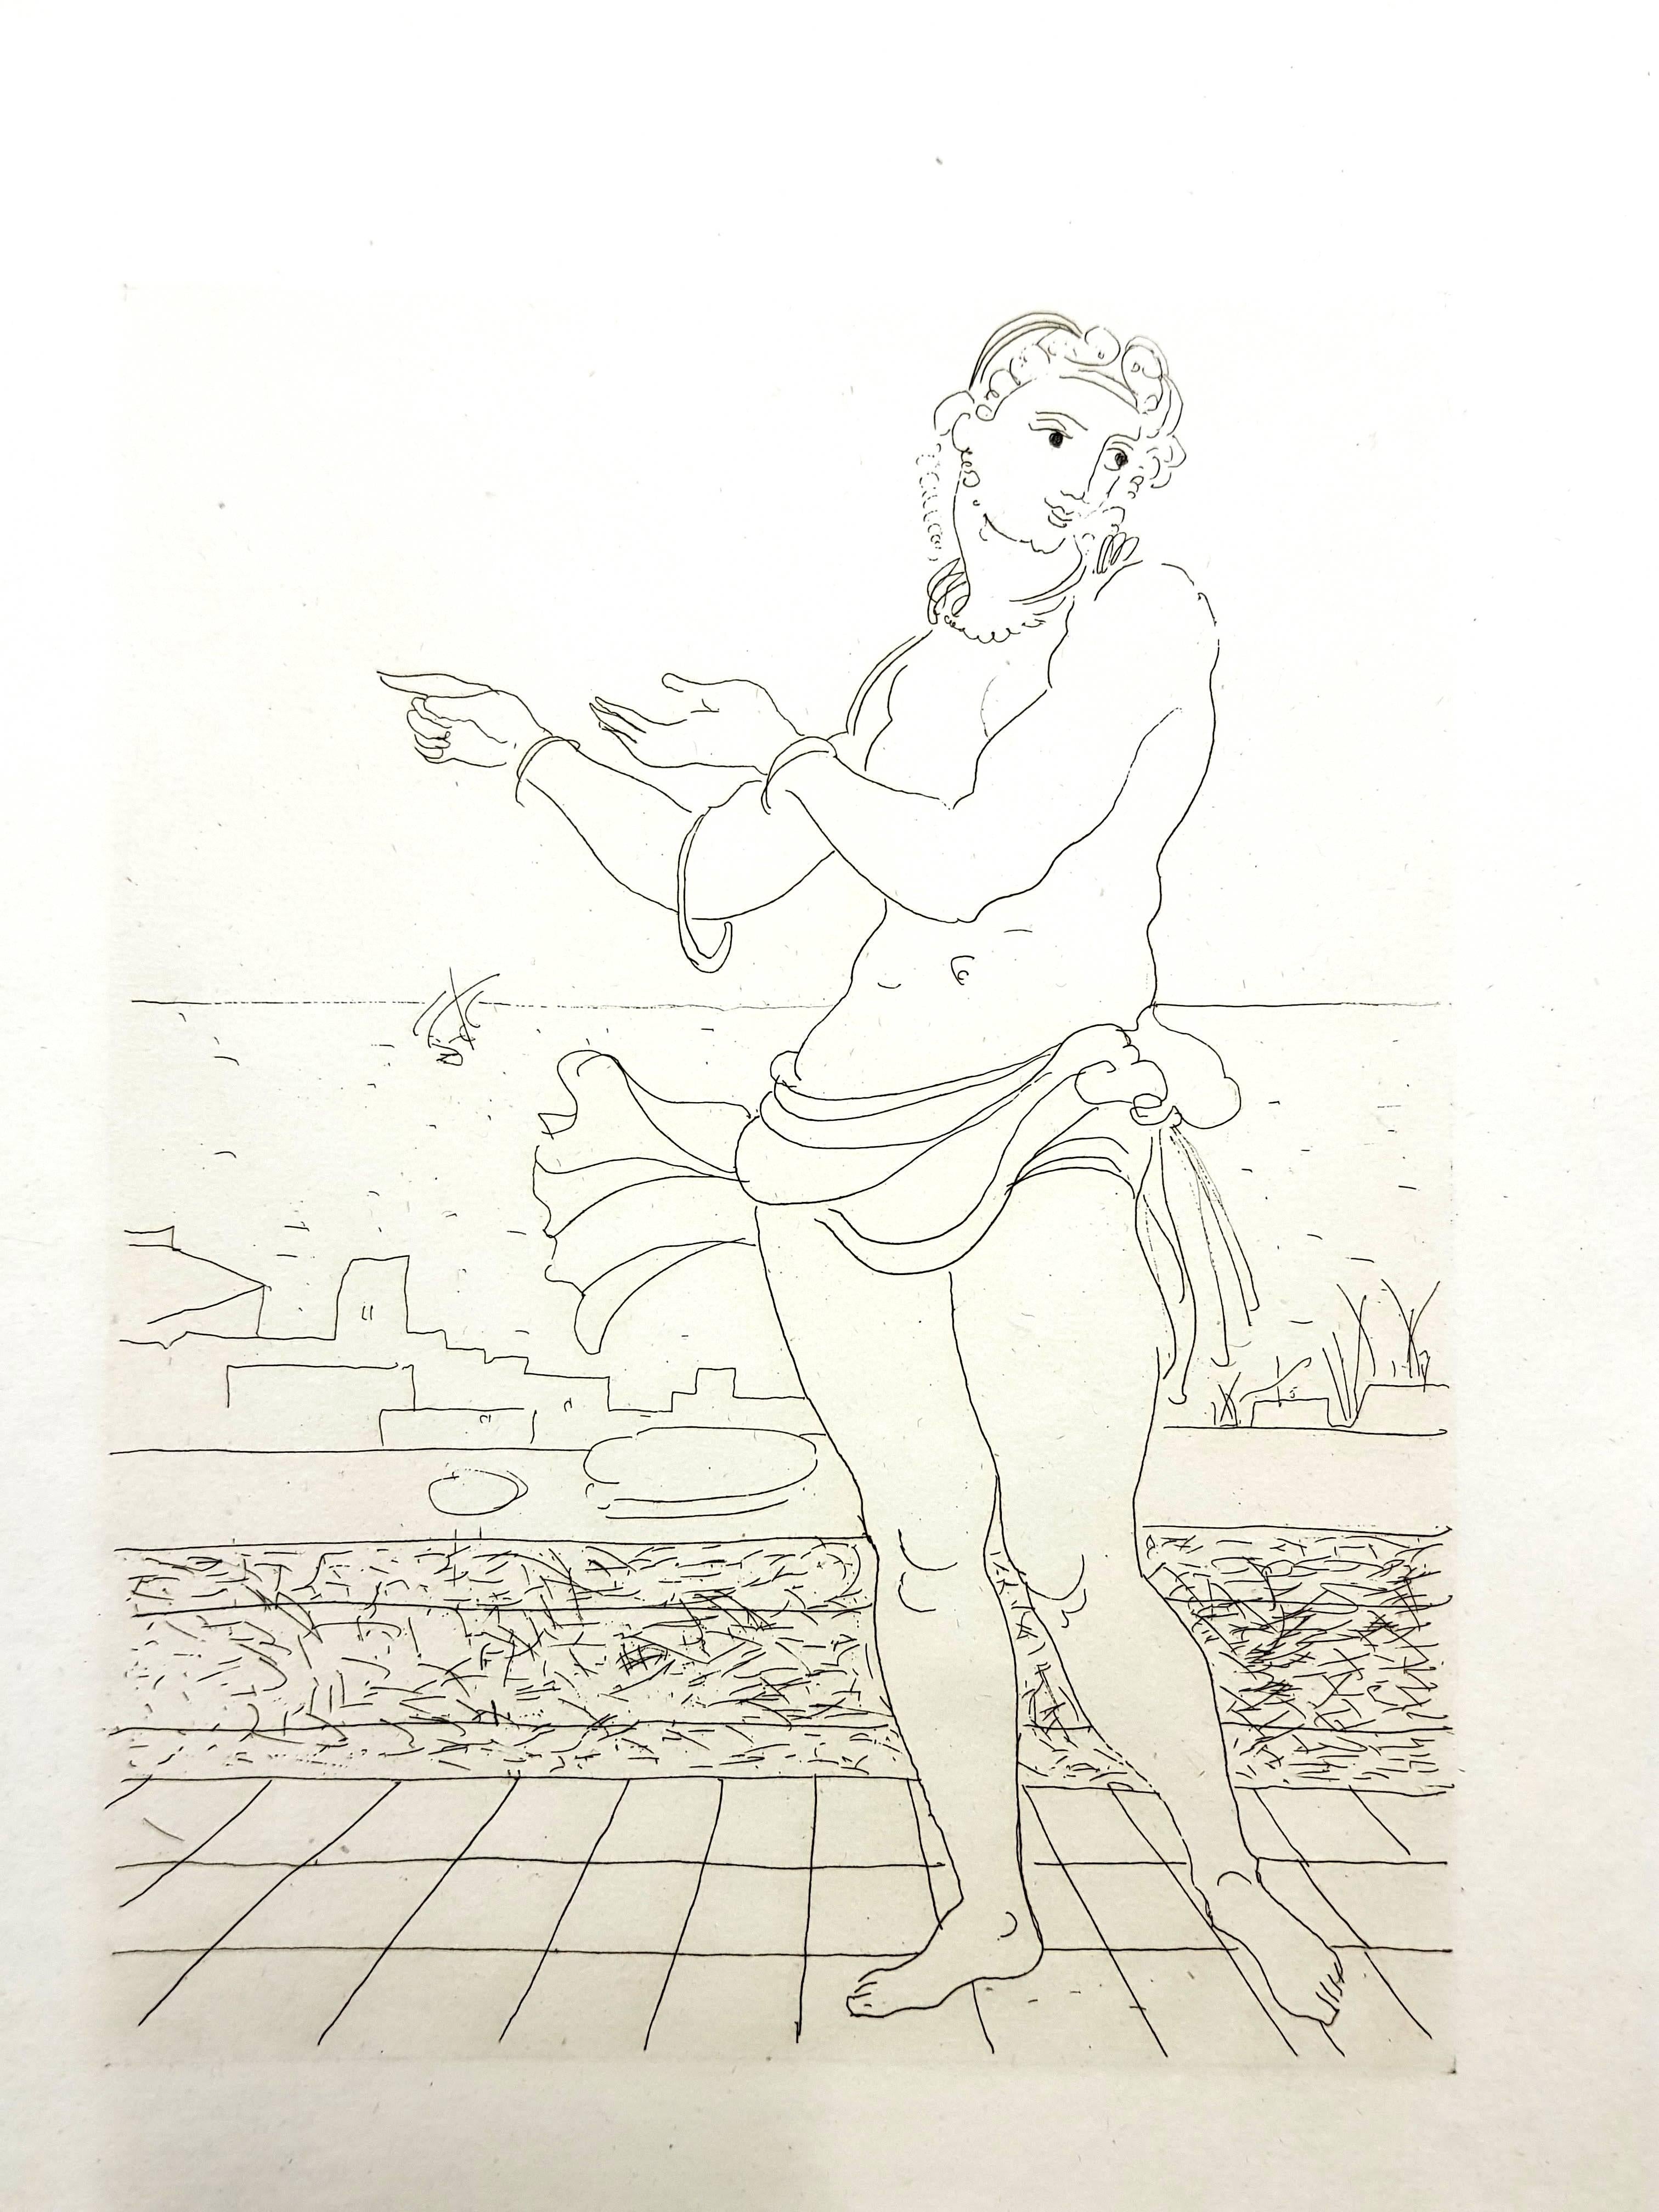 André Derain - Ovids Heroides 
Original-Radierung
Auflage von 134
Abmessungen: 32 x 25 cm
Ovide [Marcel Prevost], Héroïdes, Paris, Société des Cent-une, 1938

Andre Derain wurde 1880 in Chatou, einer Künstlerkolonie außerhalb von Paris, geboren. Im